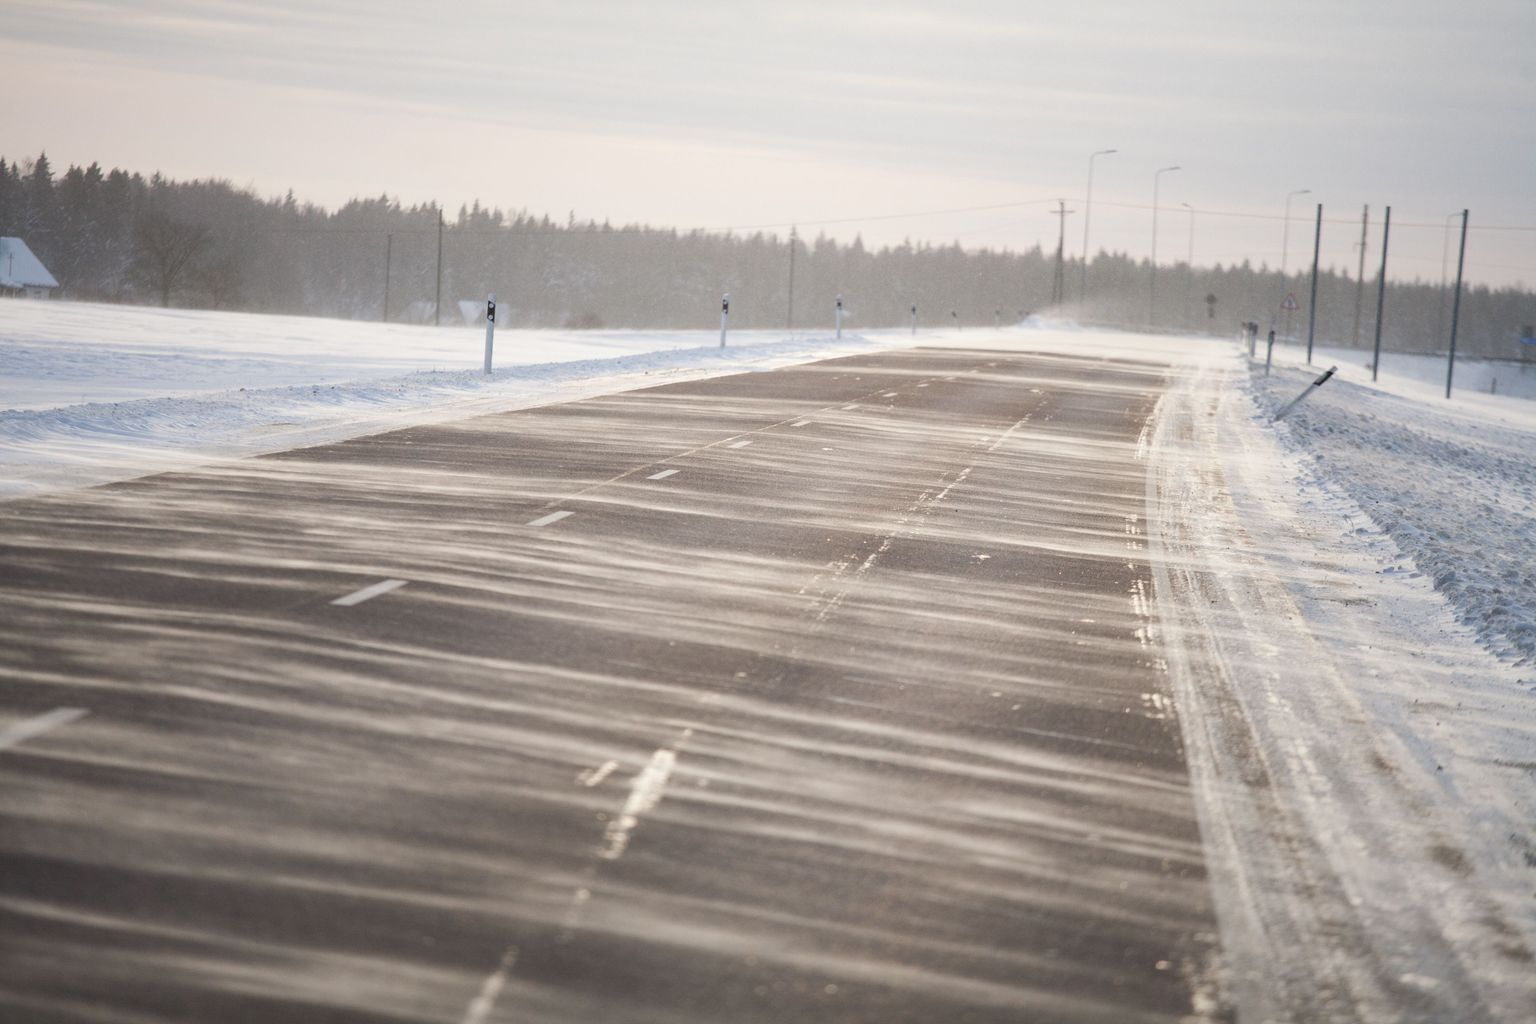 Pildil talvine Paide-Rakvere maantee. Pilt on illustratiivne.